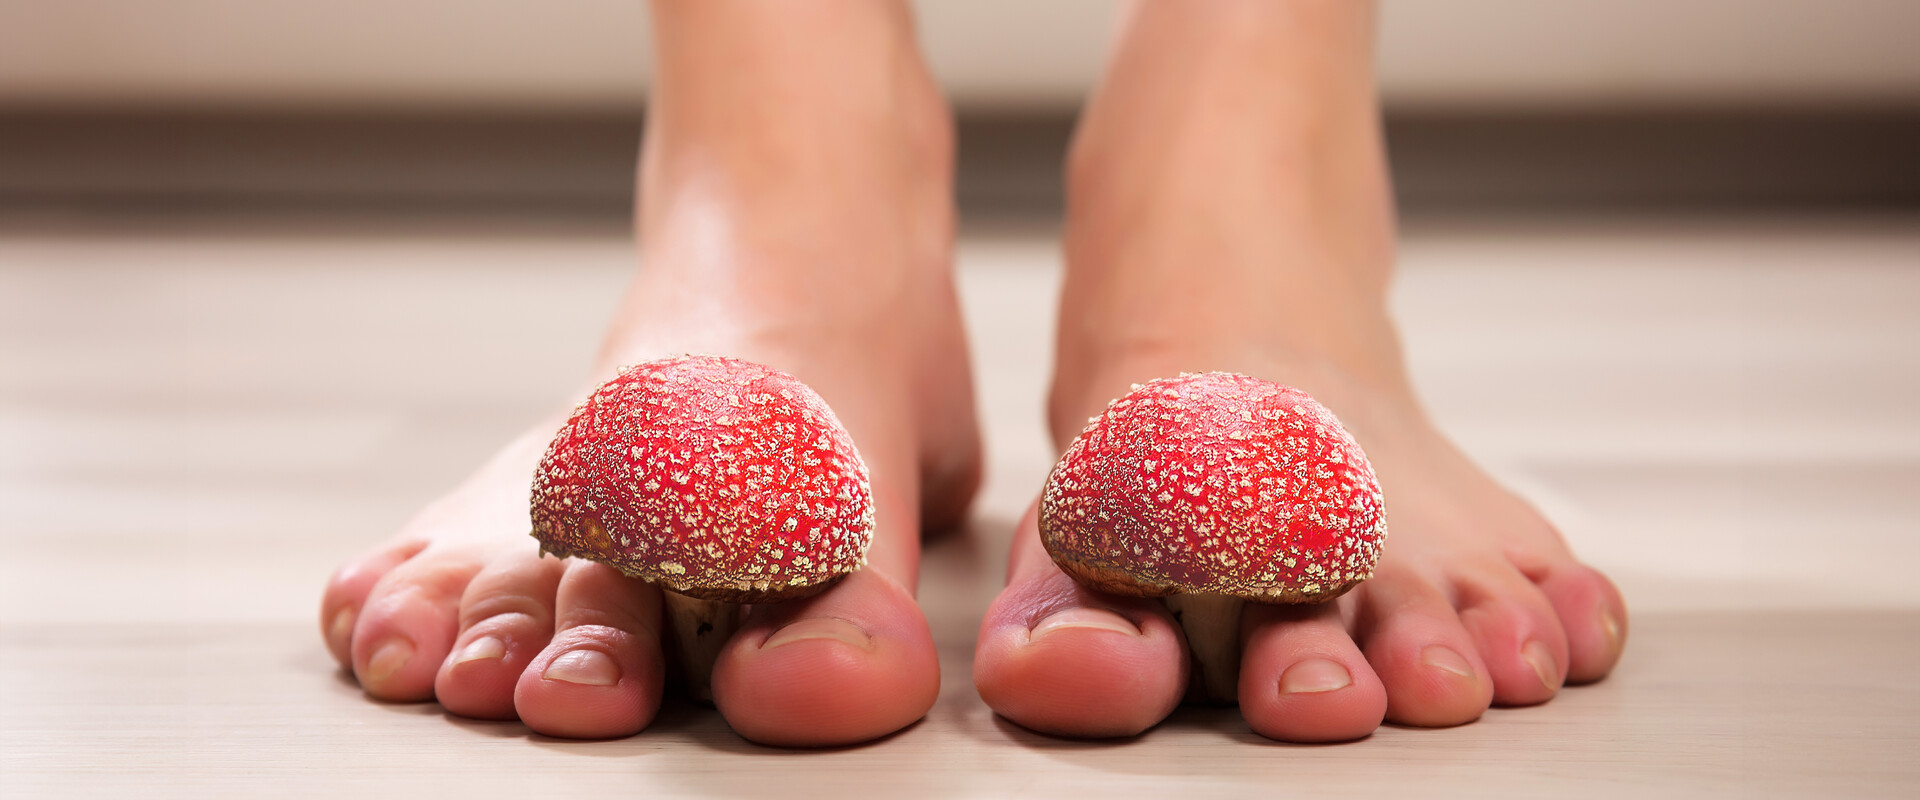 Behandlung und therapiebegleitende Pflege von Fuß- und Nagelpilz: Was Sie wissen müssen